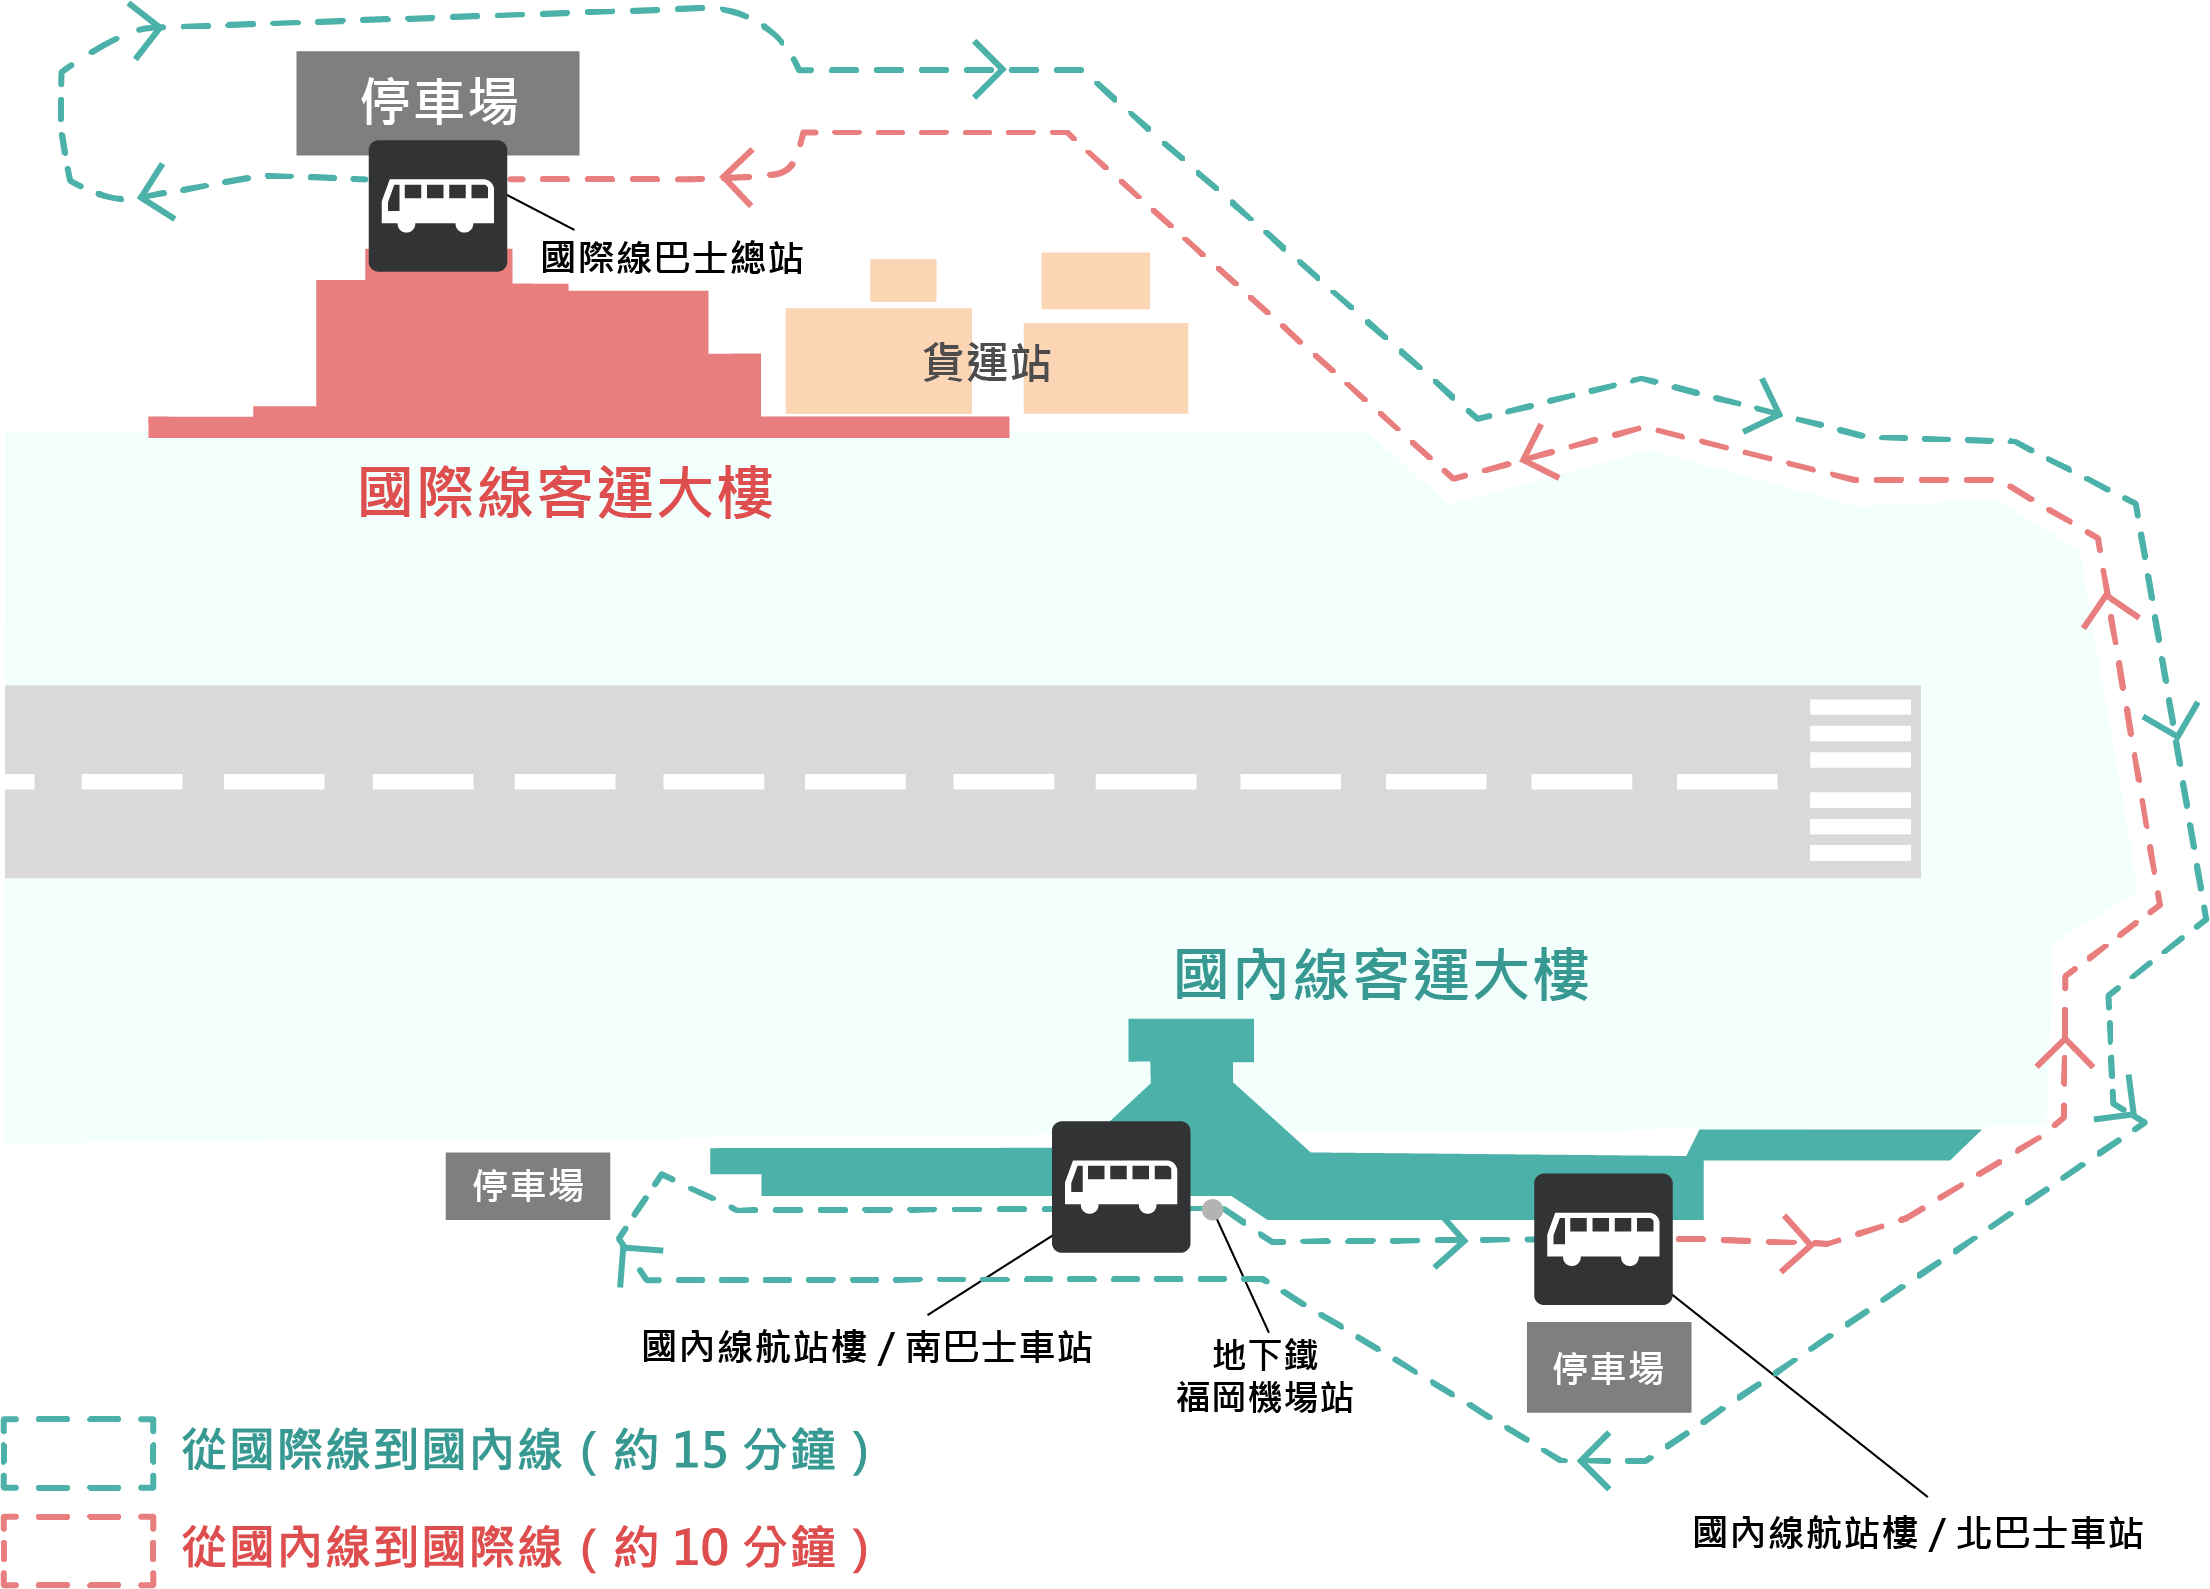 國內線・國際線接駁巴士運行路線圖